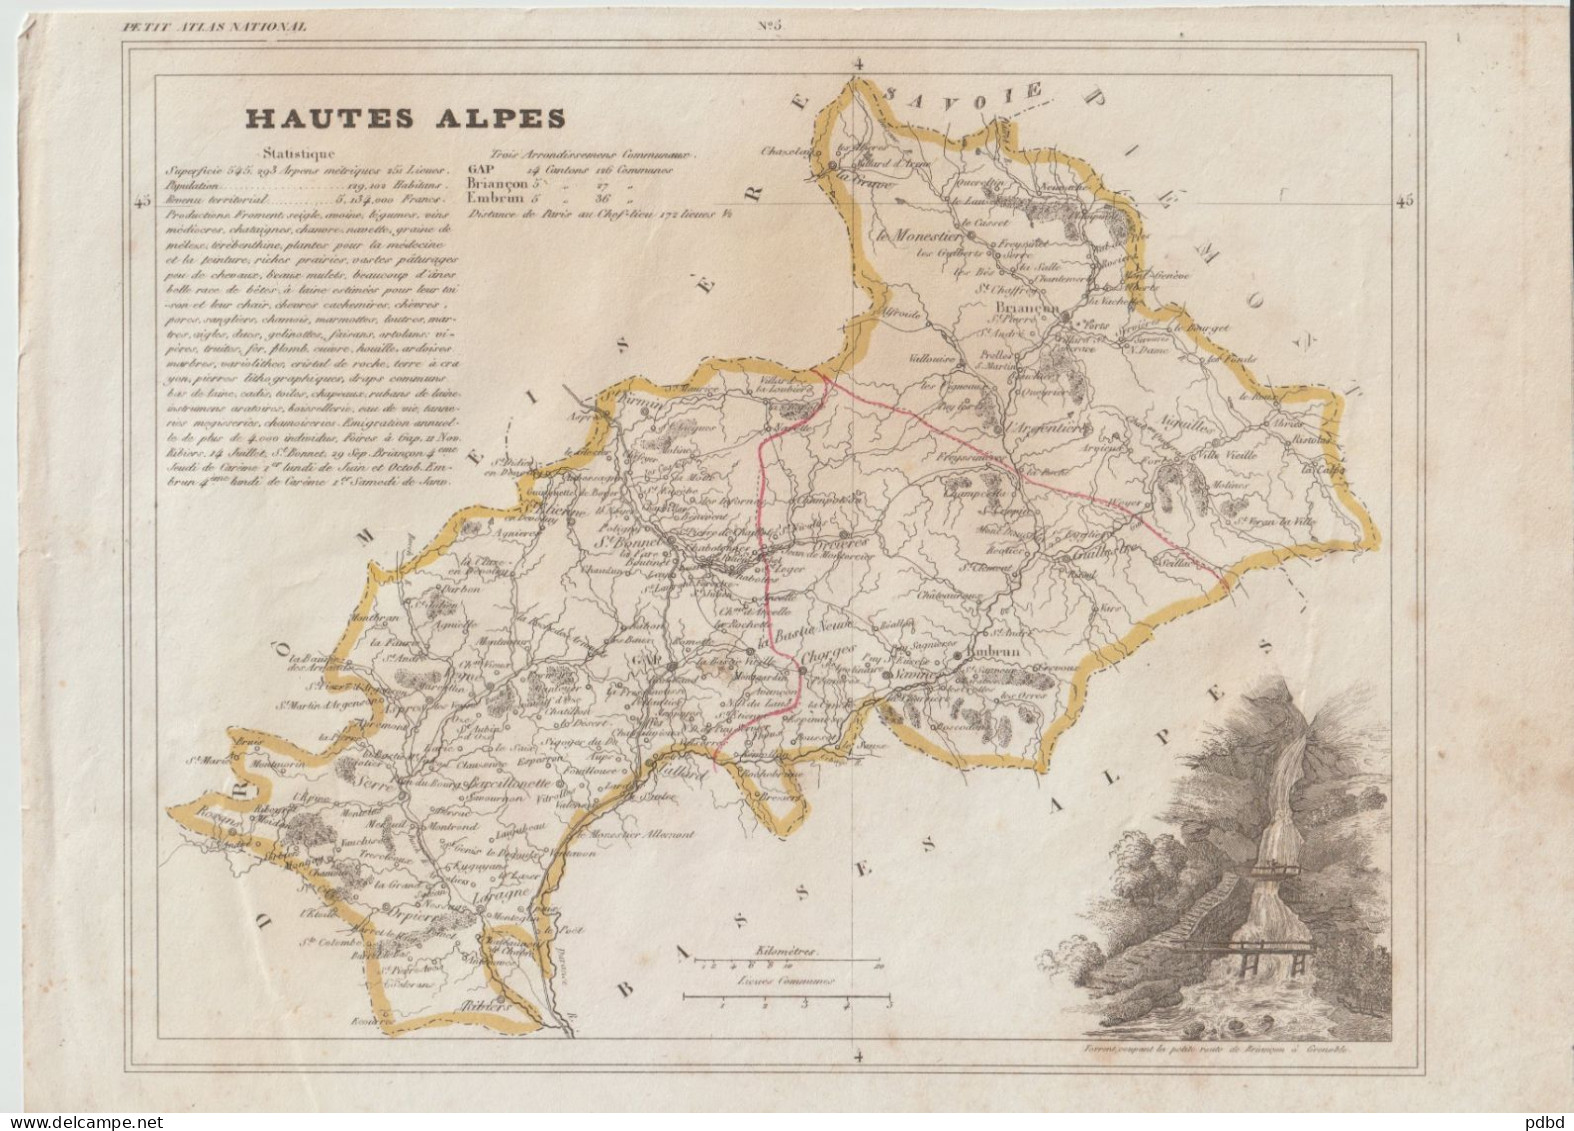 77 Cartes géographiques . Petit Atlas National .